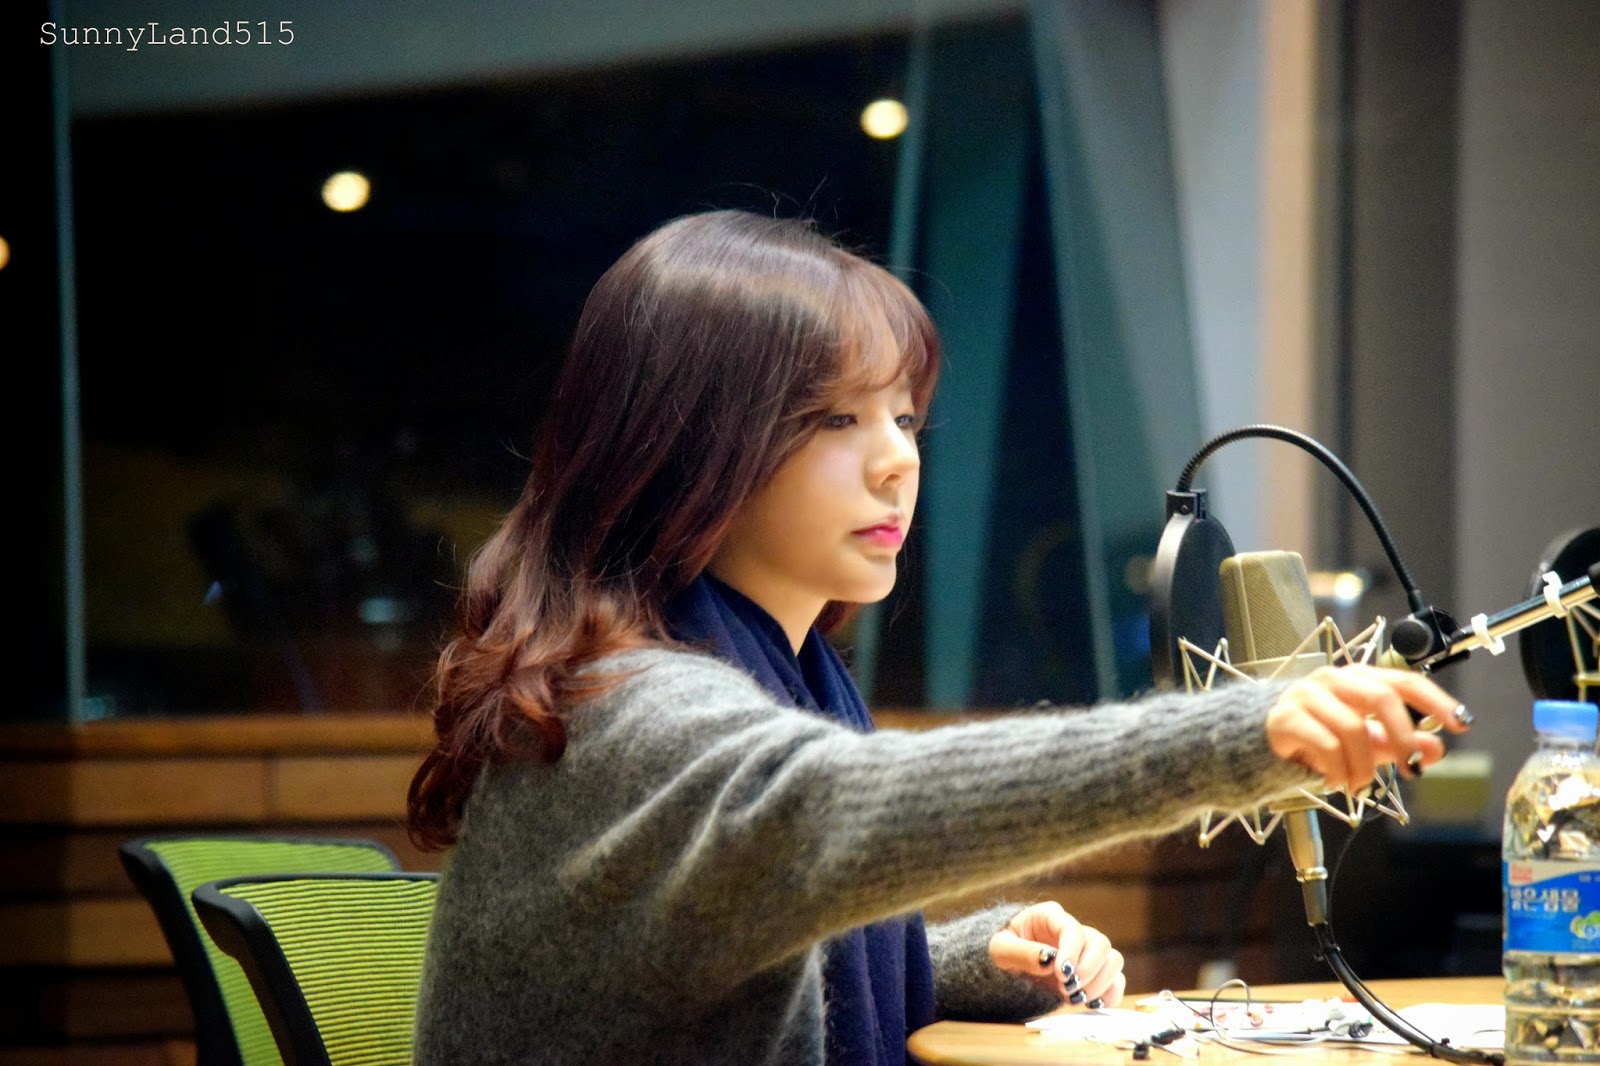 [OTHER][06-02-2015]Hình ảnh mới nhất từ DJ Sunny tại Radio MBC FM4U - "FM Date" - Page 10 DSC_0022_Fotor